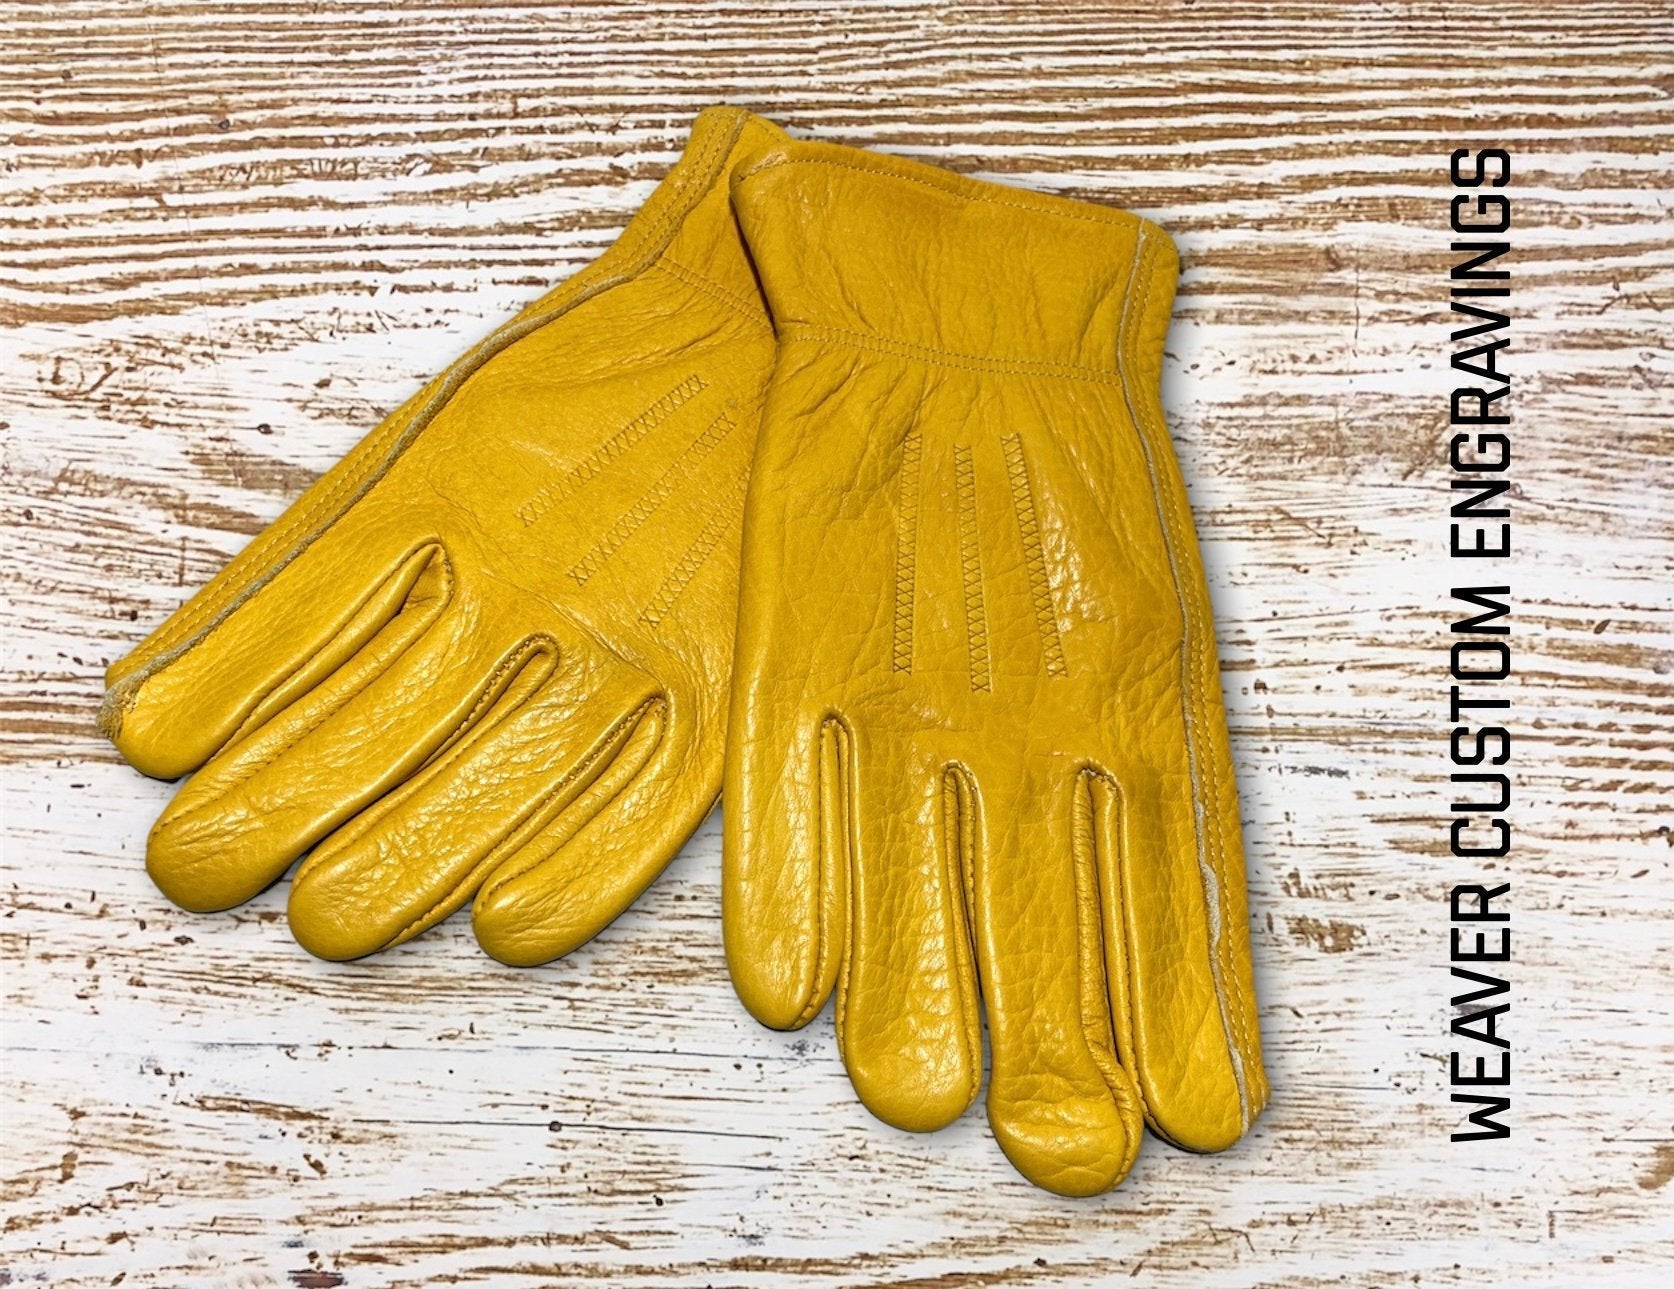 https://weavercustomengravings.com/cdn/shop/products/custom-leather-work-gloves-963053.jpg?v=1646725749&width=1946